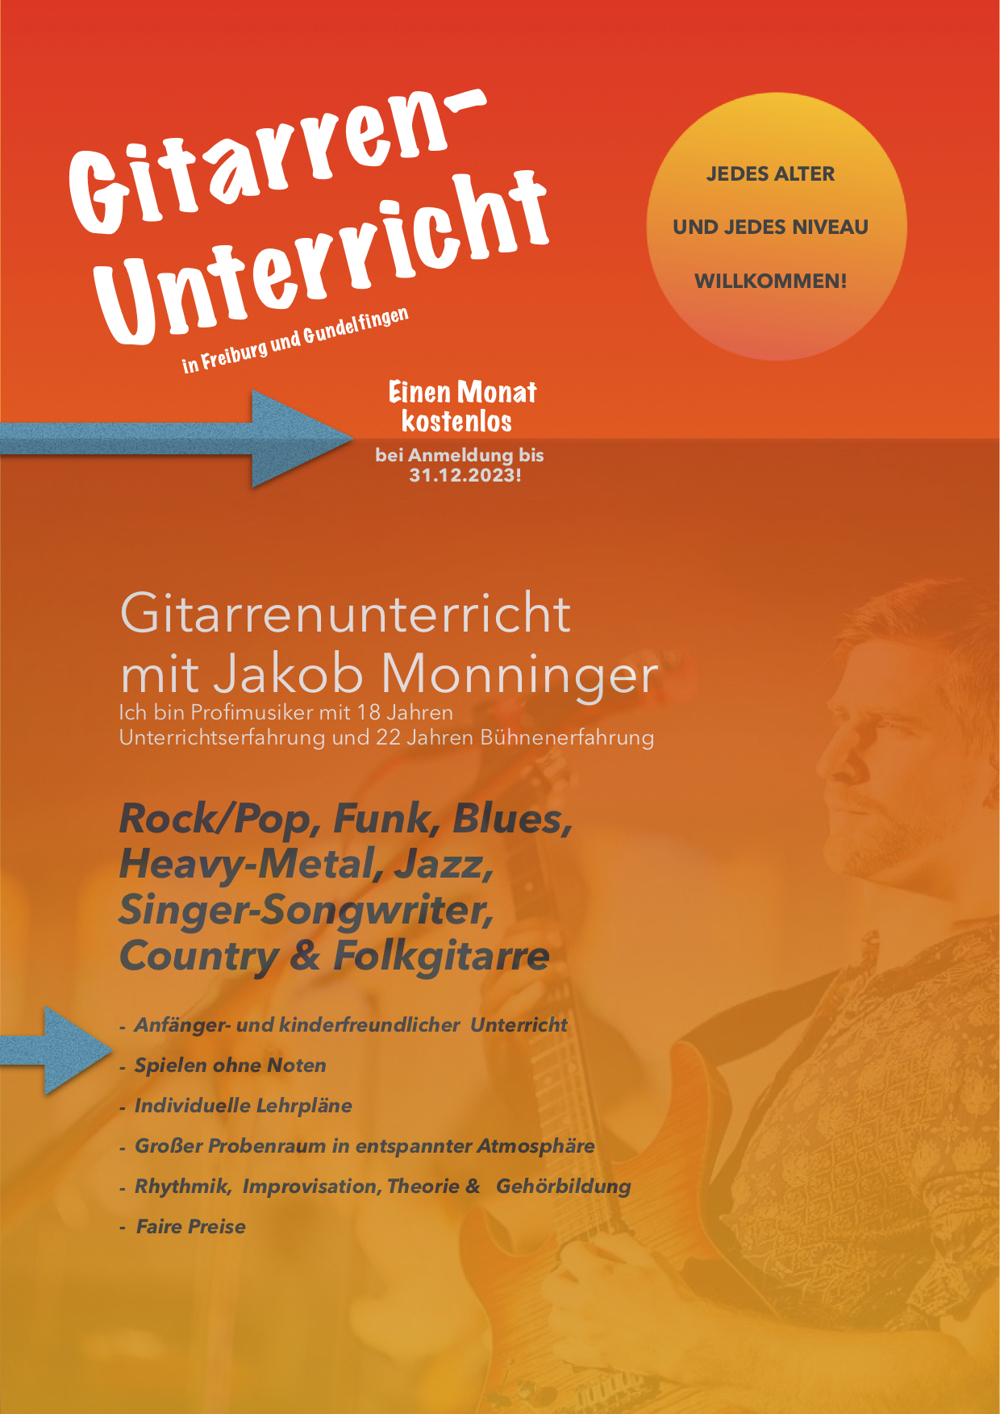 Qualifizierter Gitarrenunterricht in Gundelfingen & Freiburg. Erster Monat Gratis!